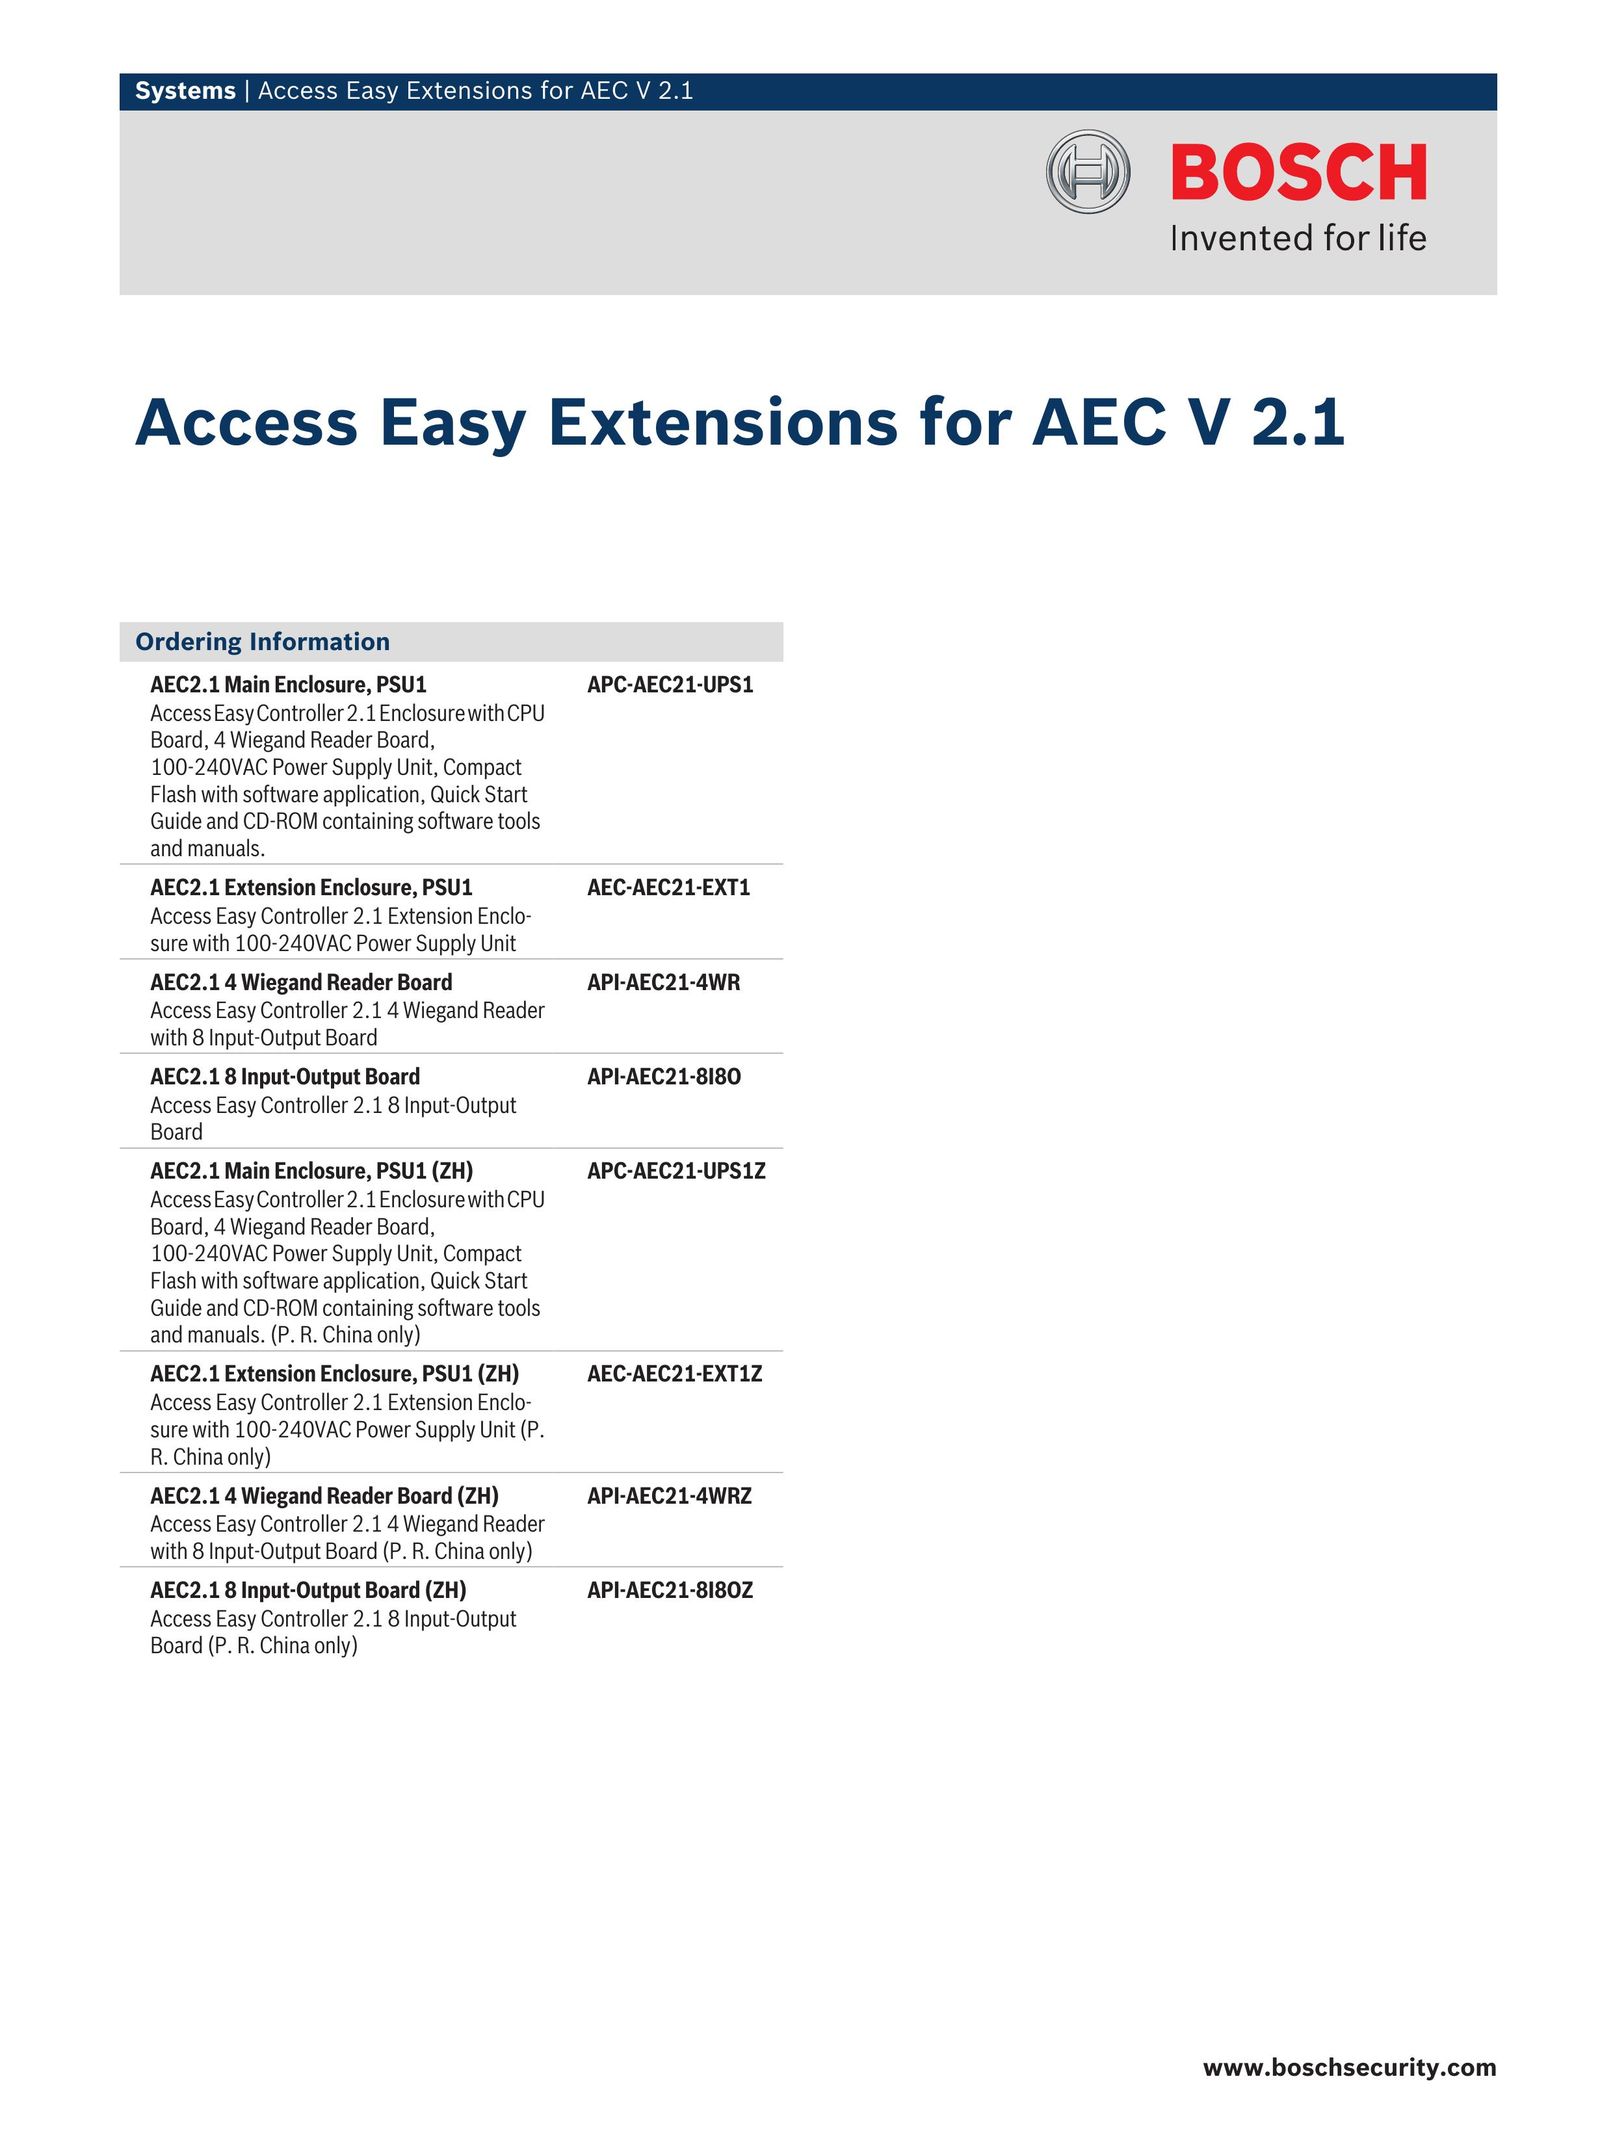 Bosch Appliances API-AEC21-8I8O Home Security System User Manual